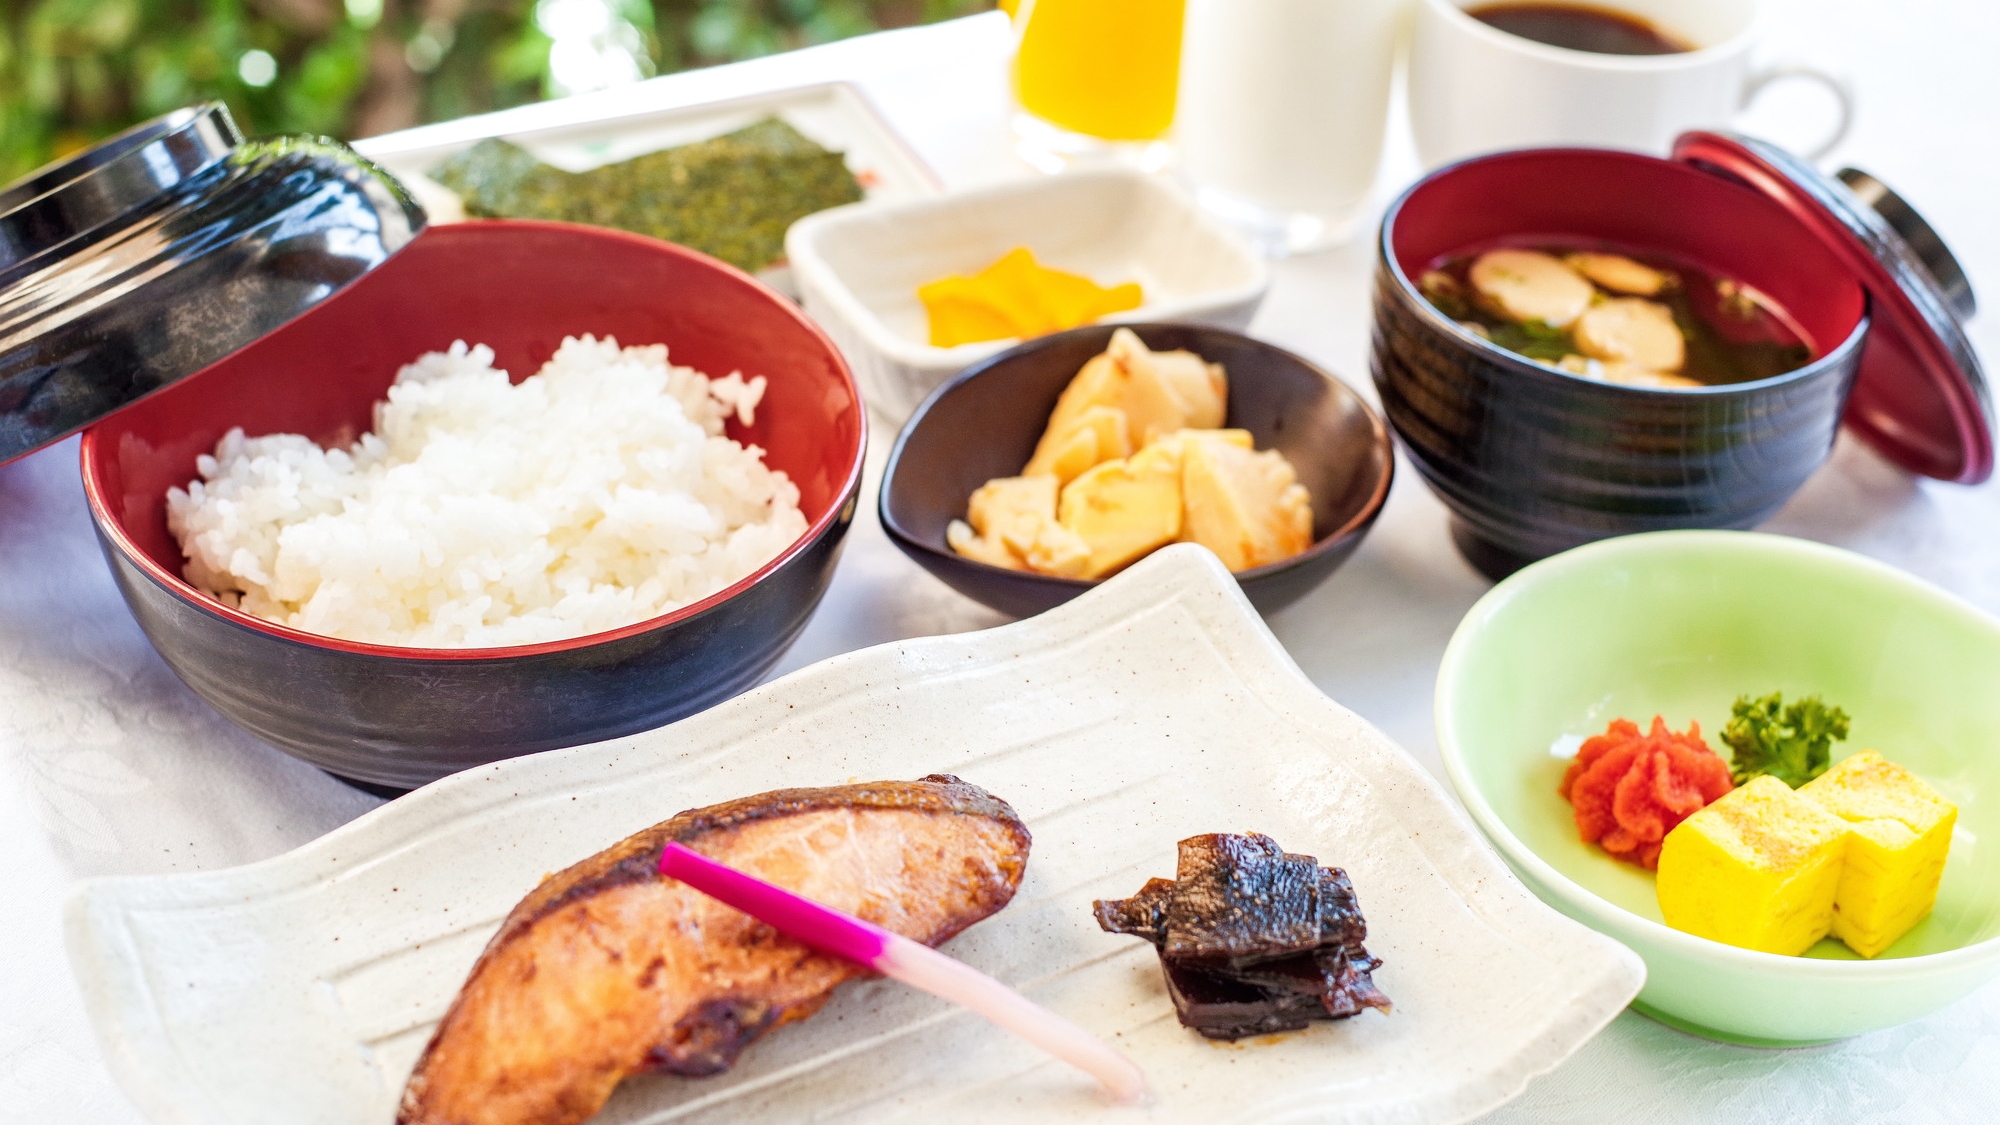 【朝食】和食のメインの焼魚は5種類を日替わりでご提供♪ お米は、兵庫県但馬産の棚田米を使用。